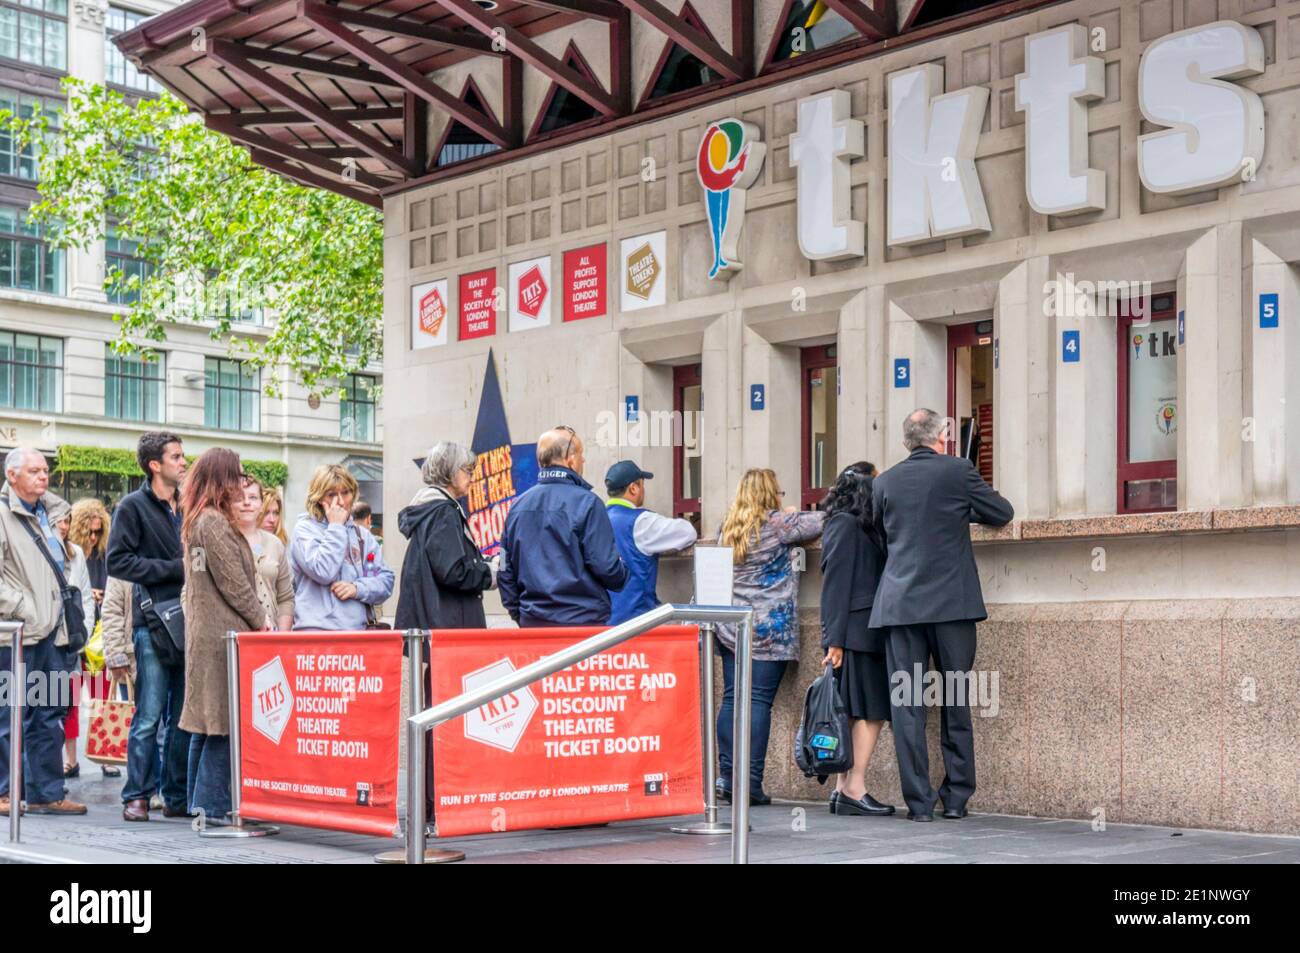 La gente hace cola en la taquilla de TKTS en Leicester Square, vendiendo boletos a mitad de precio para los teatros de Londres. Foto de stock